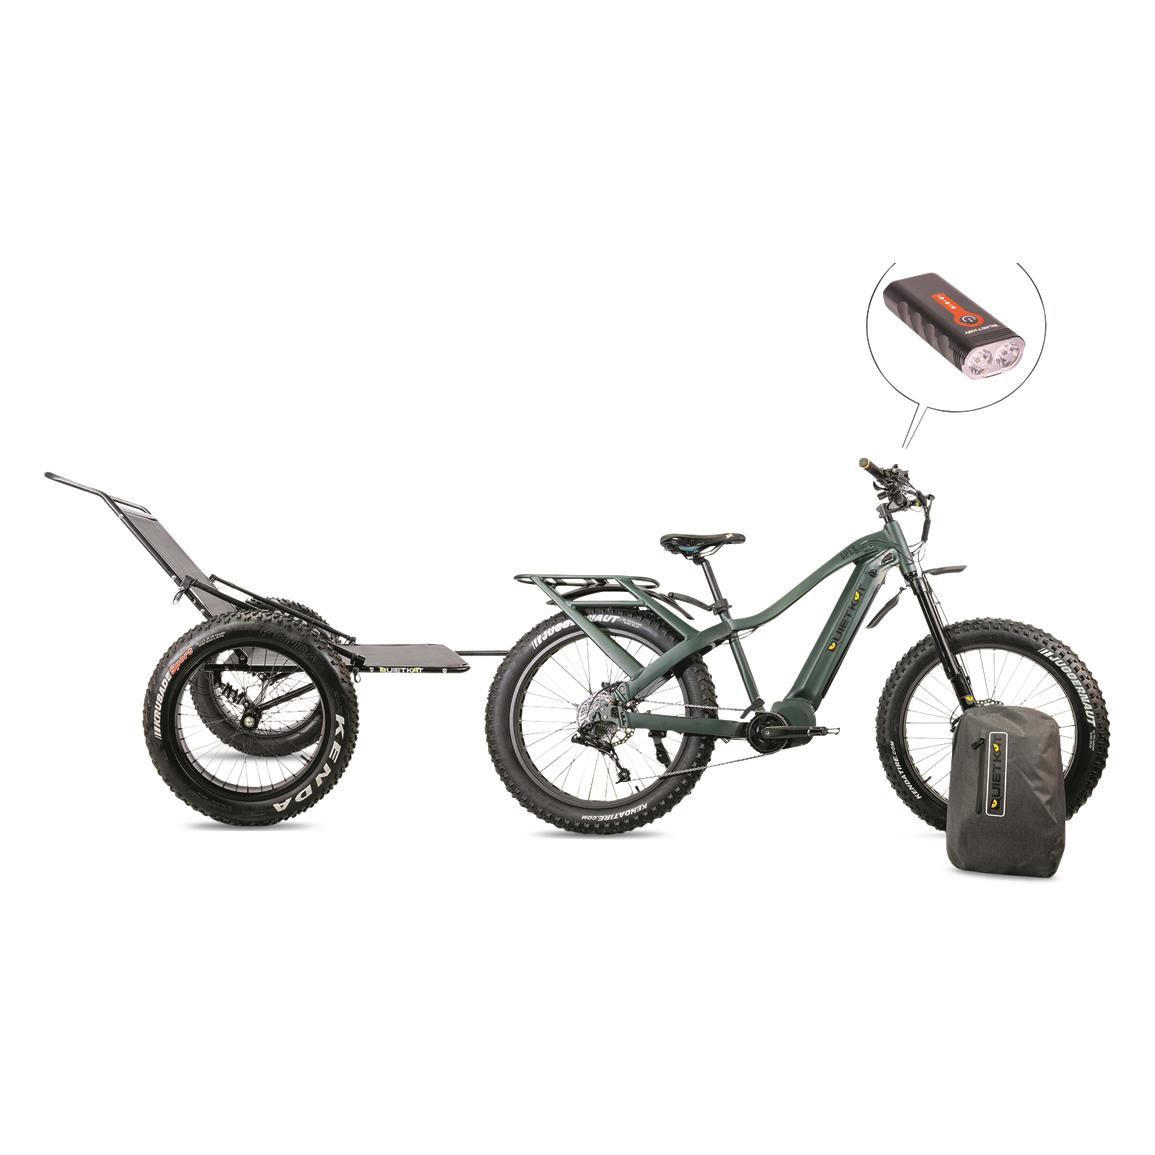 QuietKat Bike Accessory Bundle, 5 Piece